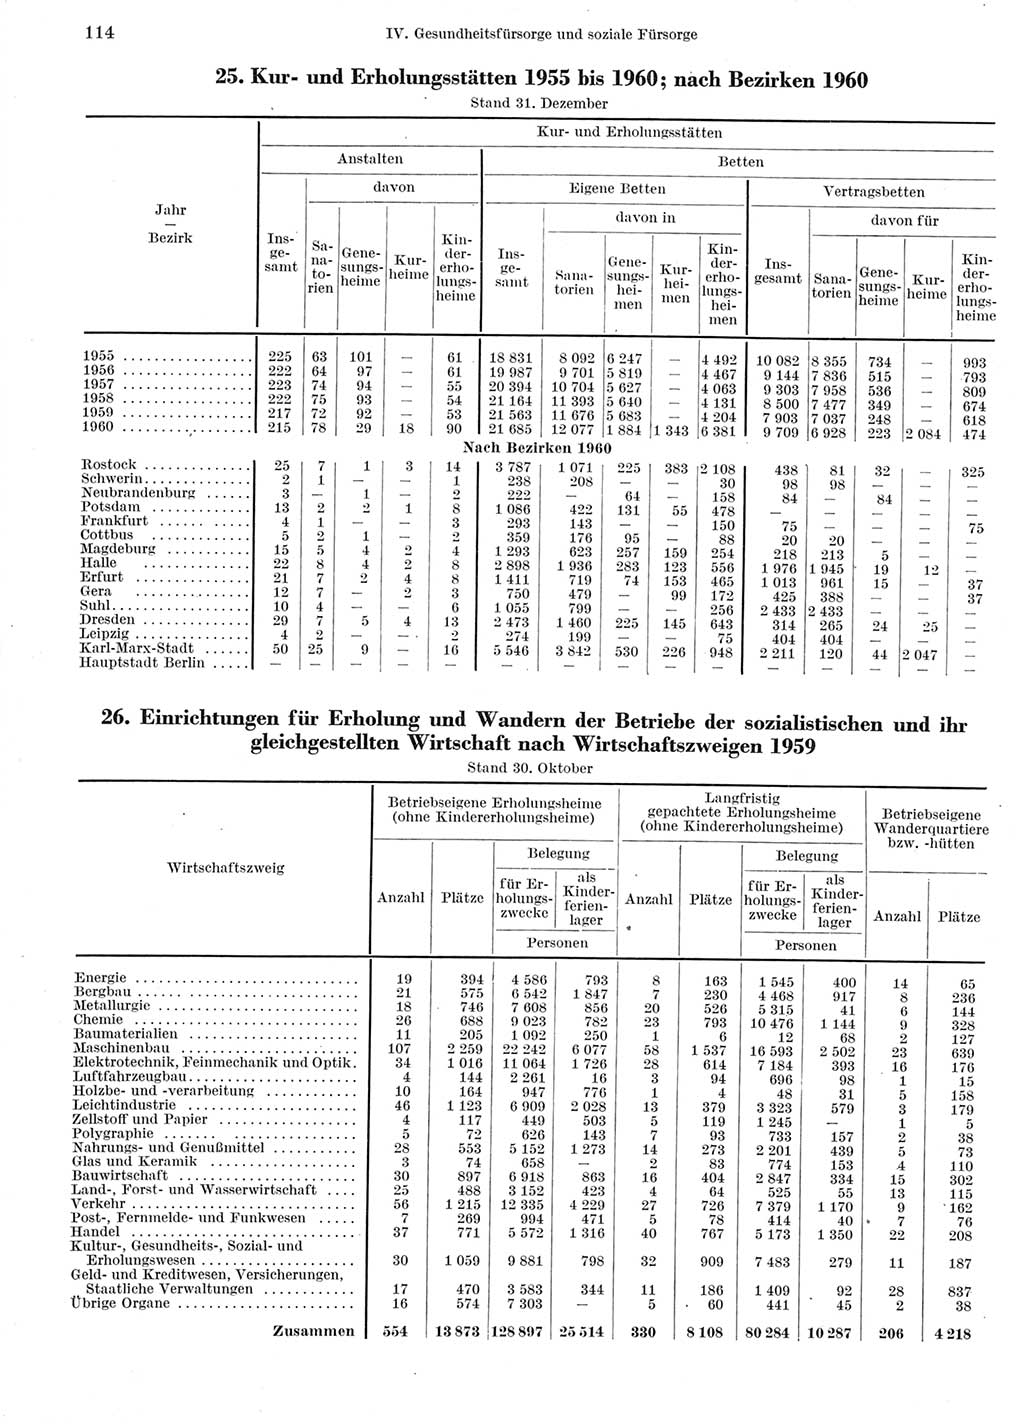 Statistisches Jahrbuch der Deutschen Demokratischen Republik (DDR) 1960-1961, Seite 114 (Stat. Jb. DDR 1960-1961, S. 114)